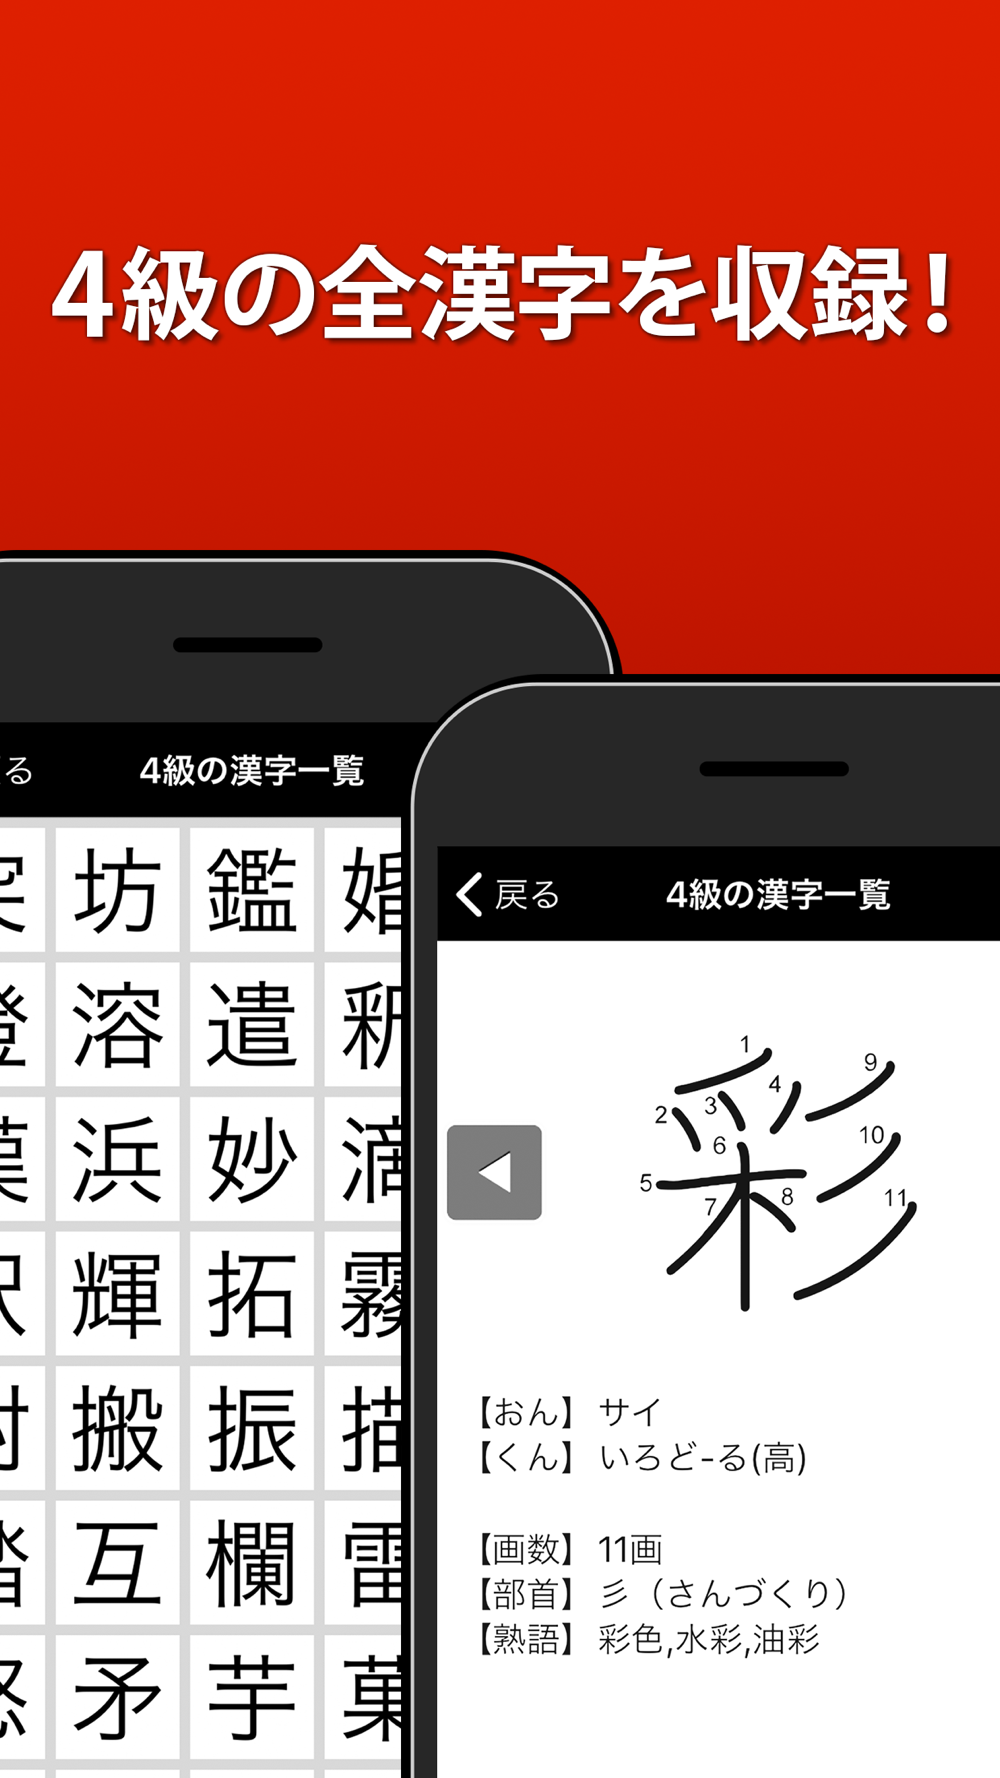 漢検4級 漢字検定問題集 Free Download App For Iphone Steprimo Com